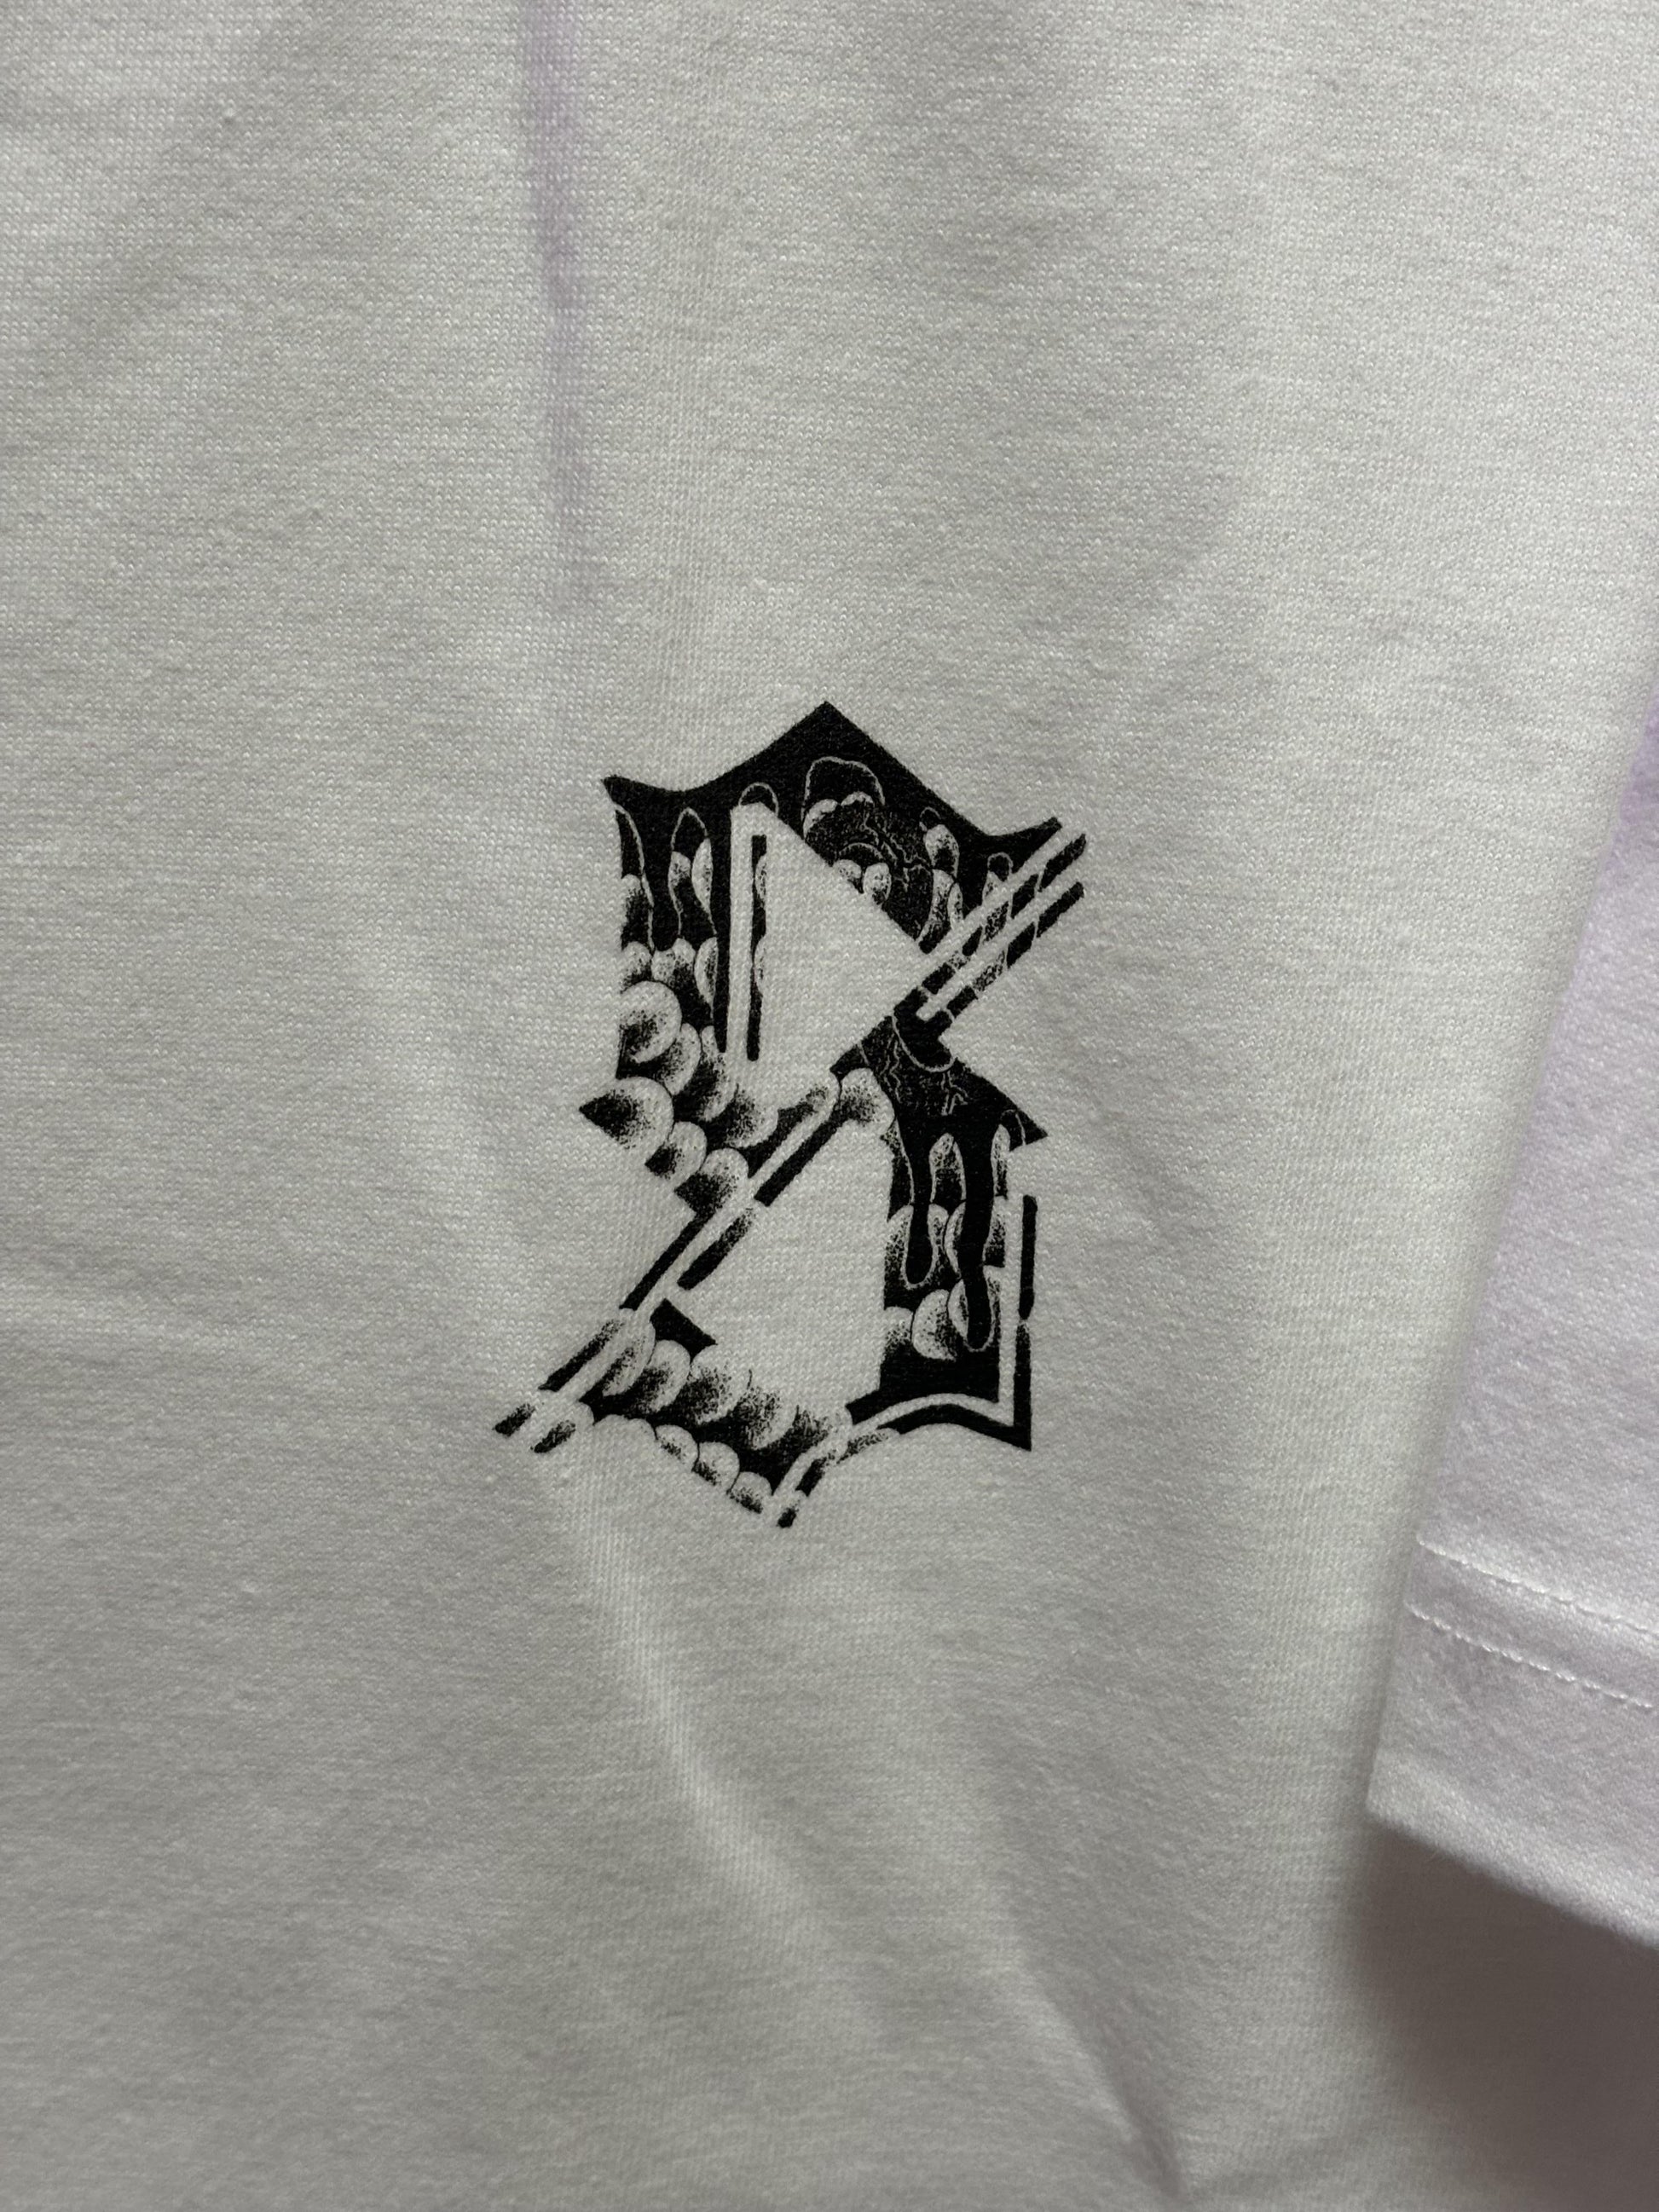 S t-shirt（XXL） - FROM ARTIST